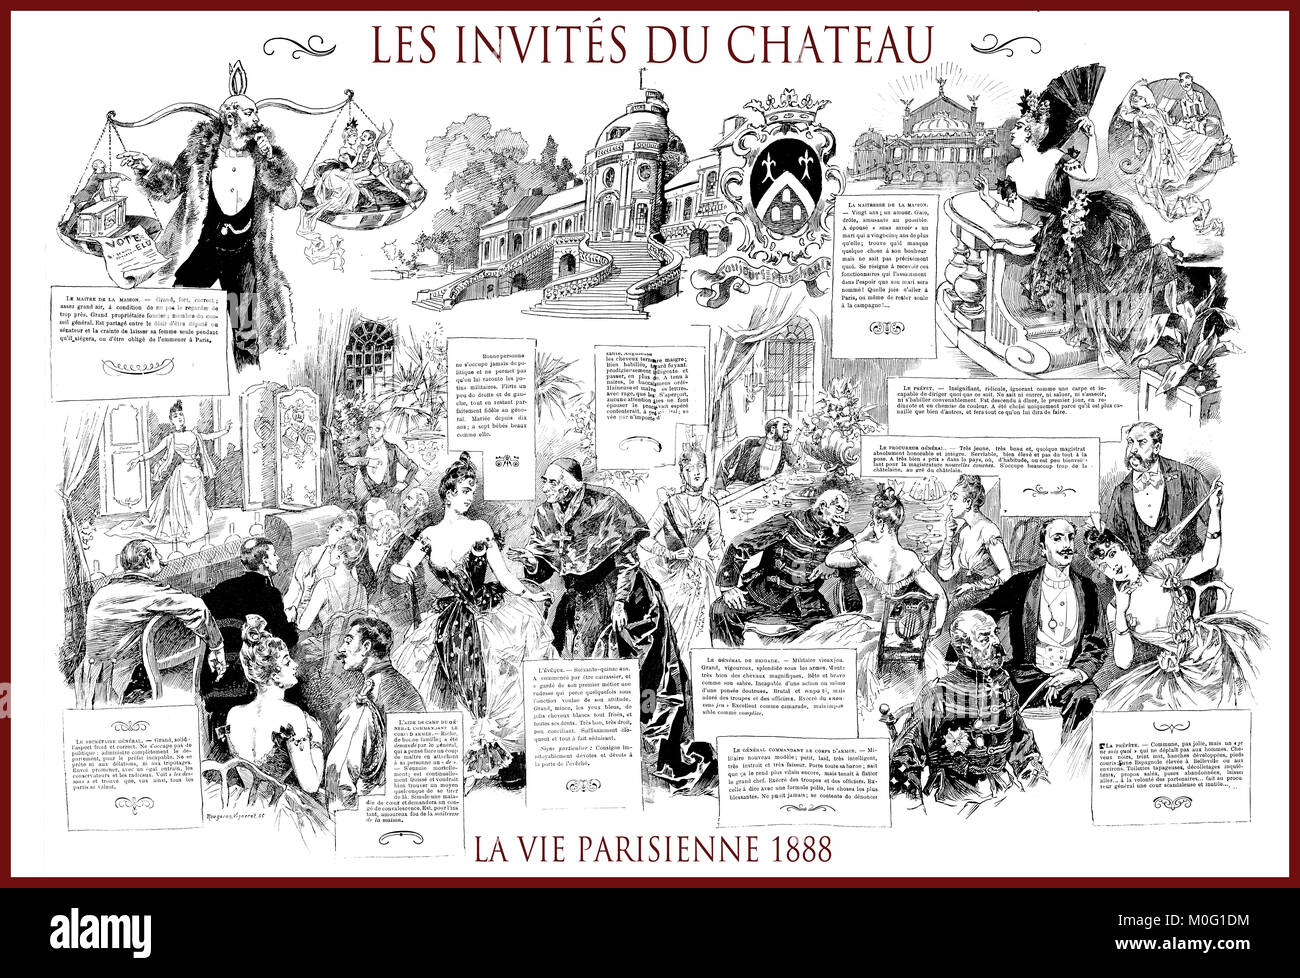 Magazine satirique français La vie Parisienne 1888, page centrale : les invités du chateau - château réduite, humour, caricatures, portraits Banque D'Images